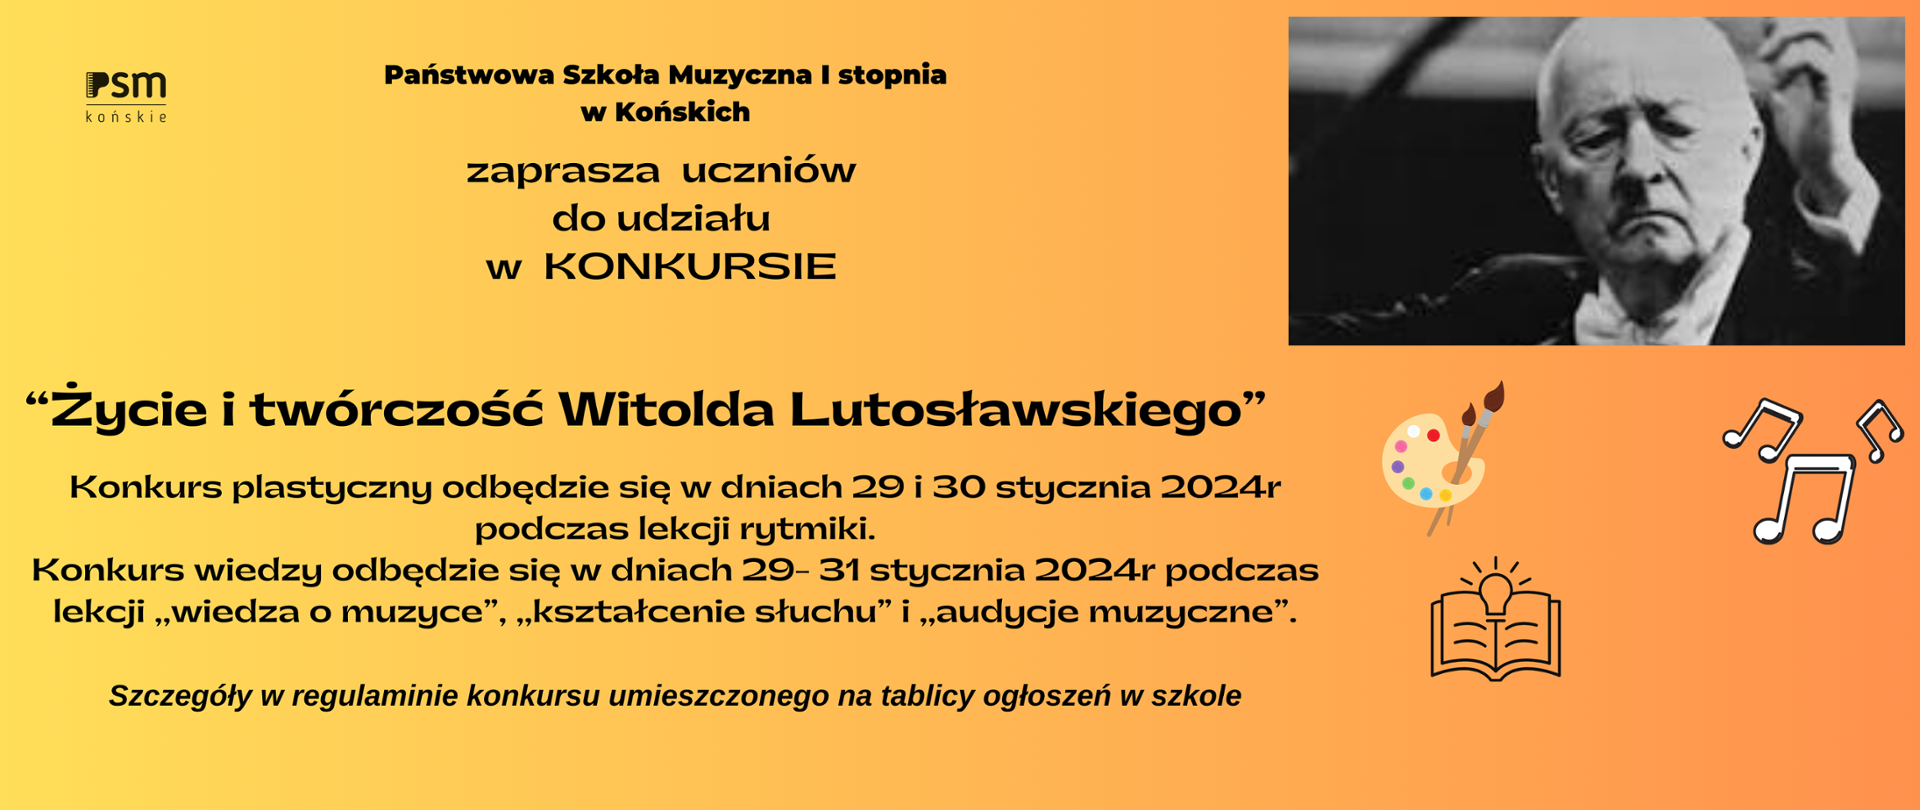 Baner informujący o Konkursie "Życie i twórczość Witolda Lutosławskiego. Tło w kolorach pomarańczu, czarne litery W prawym górnym rogu zdjęcie kompozytora.